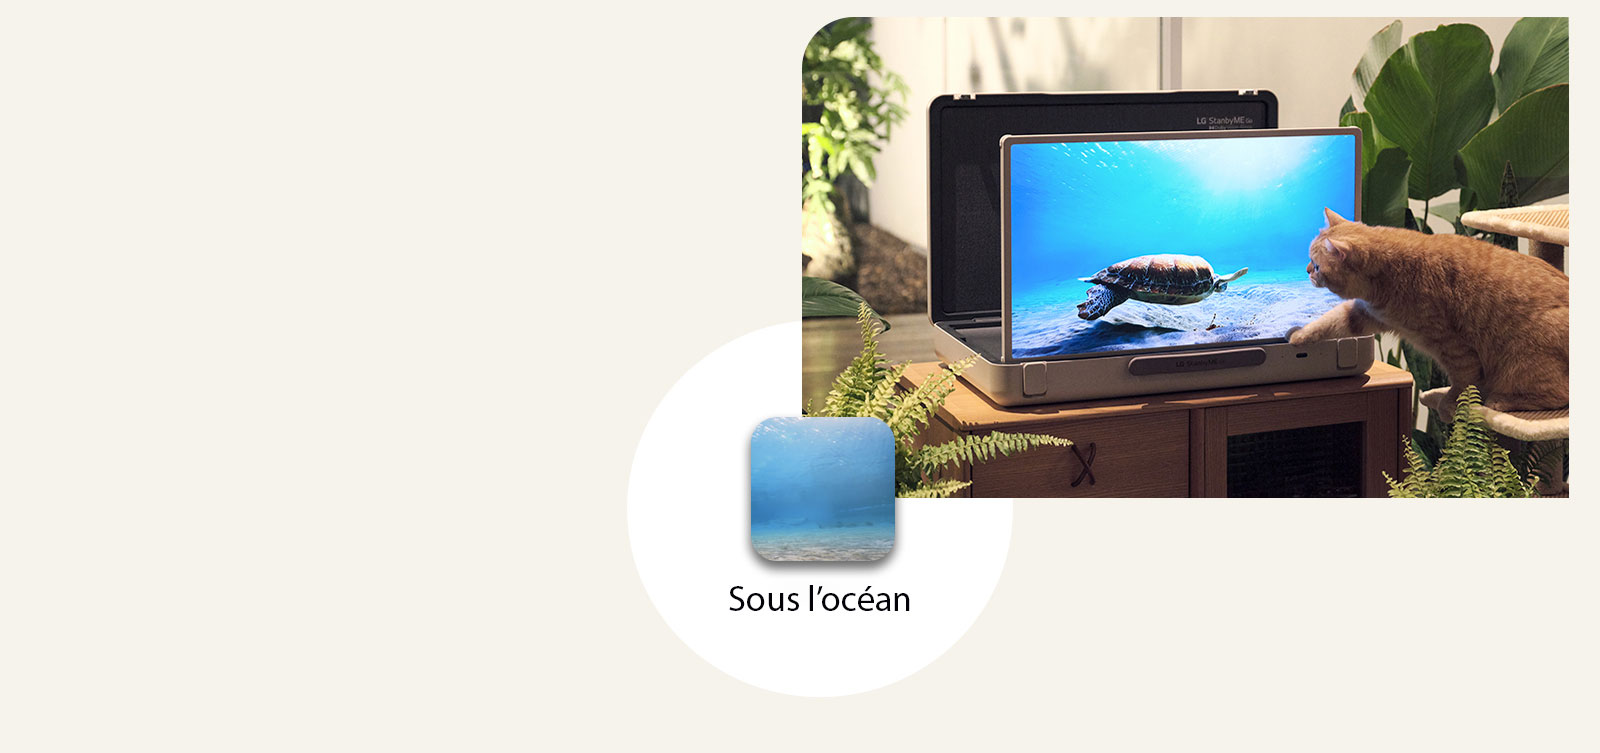 Le LG StanbyME Go est placé dans le jardin, et l’écran montre sous l’océan. Face à l’écran, un chat est assis sur un tabouret, essayant d’attraper une tortue à l’écran.